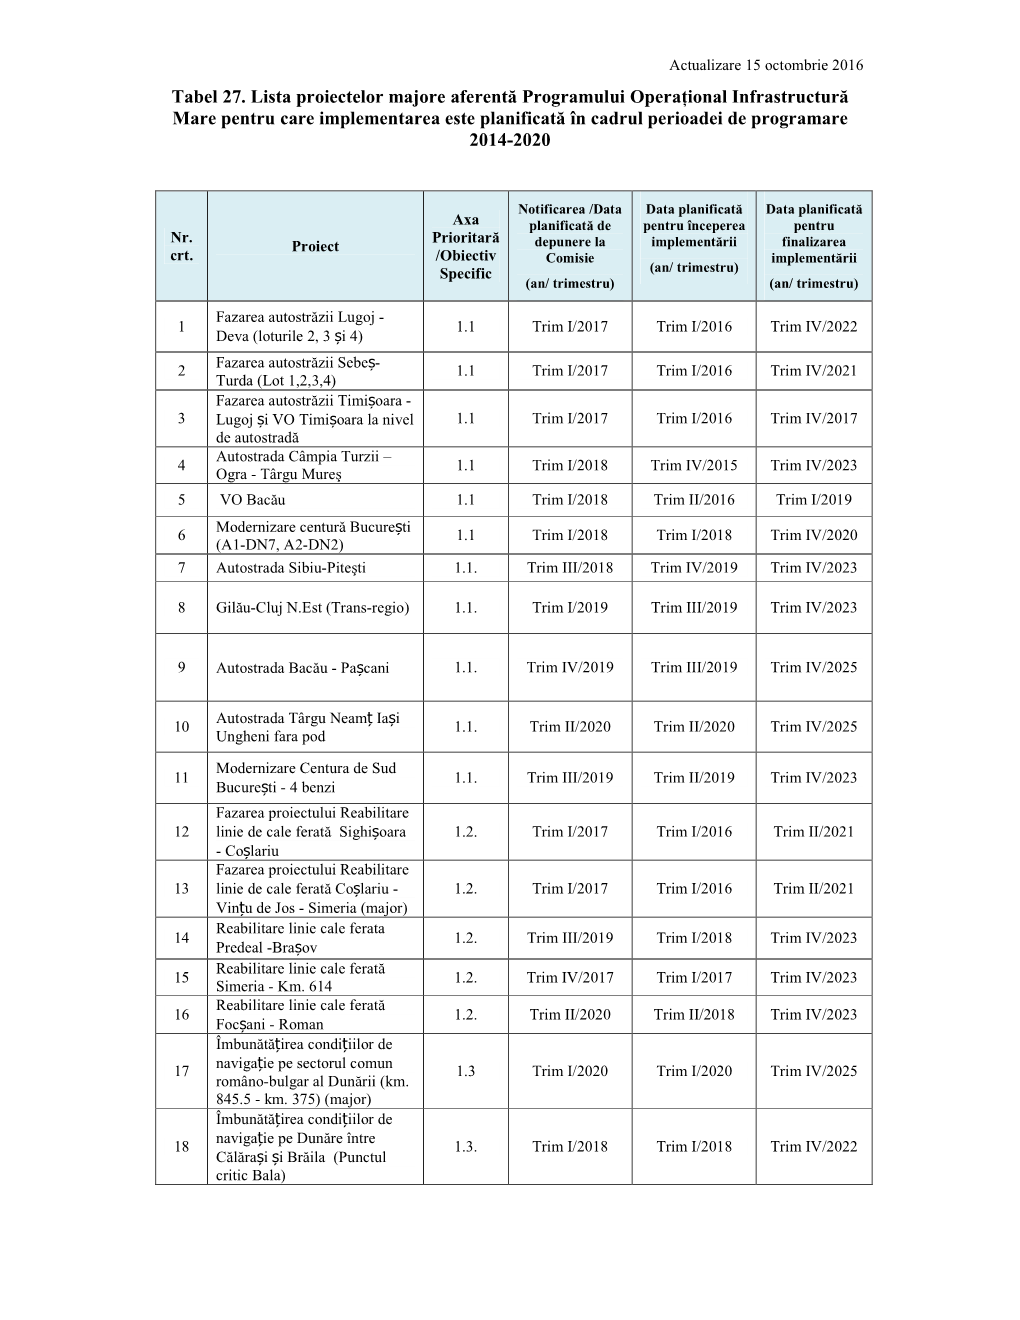 Tabel 27. Lista Proiectelor Majore Aferentă Programului